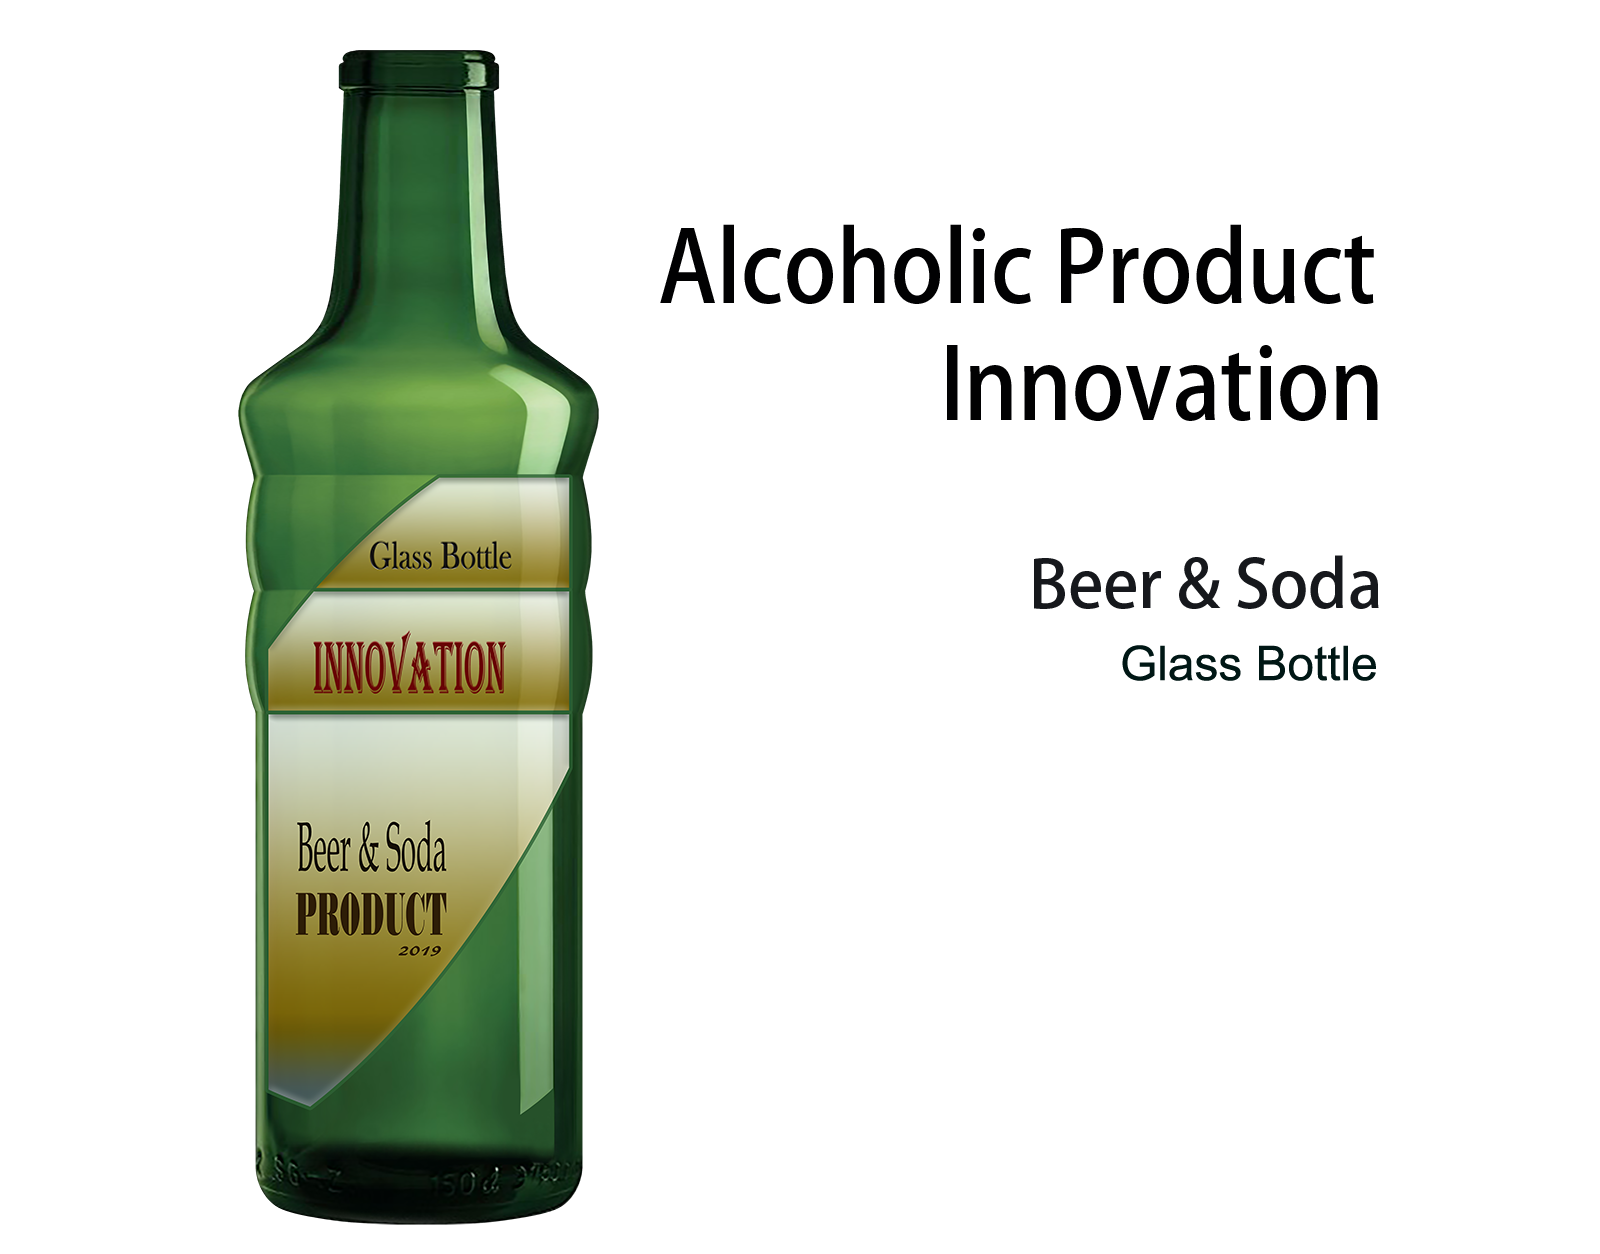 Glass Bottle / Beer & Soda